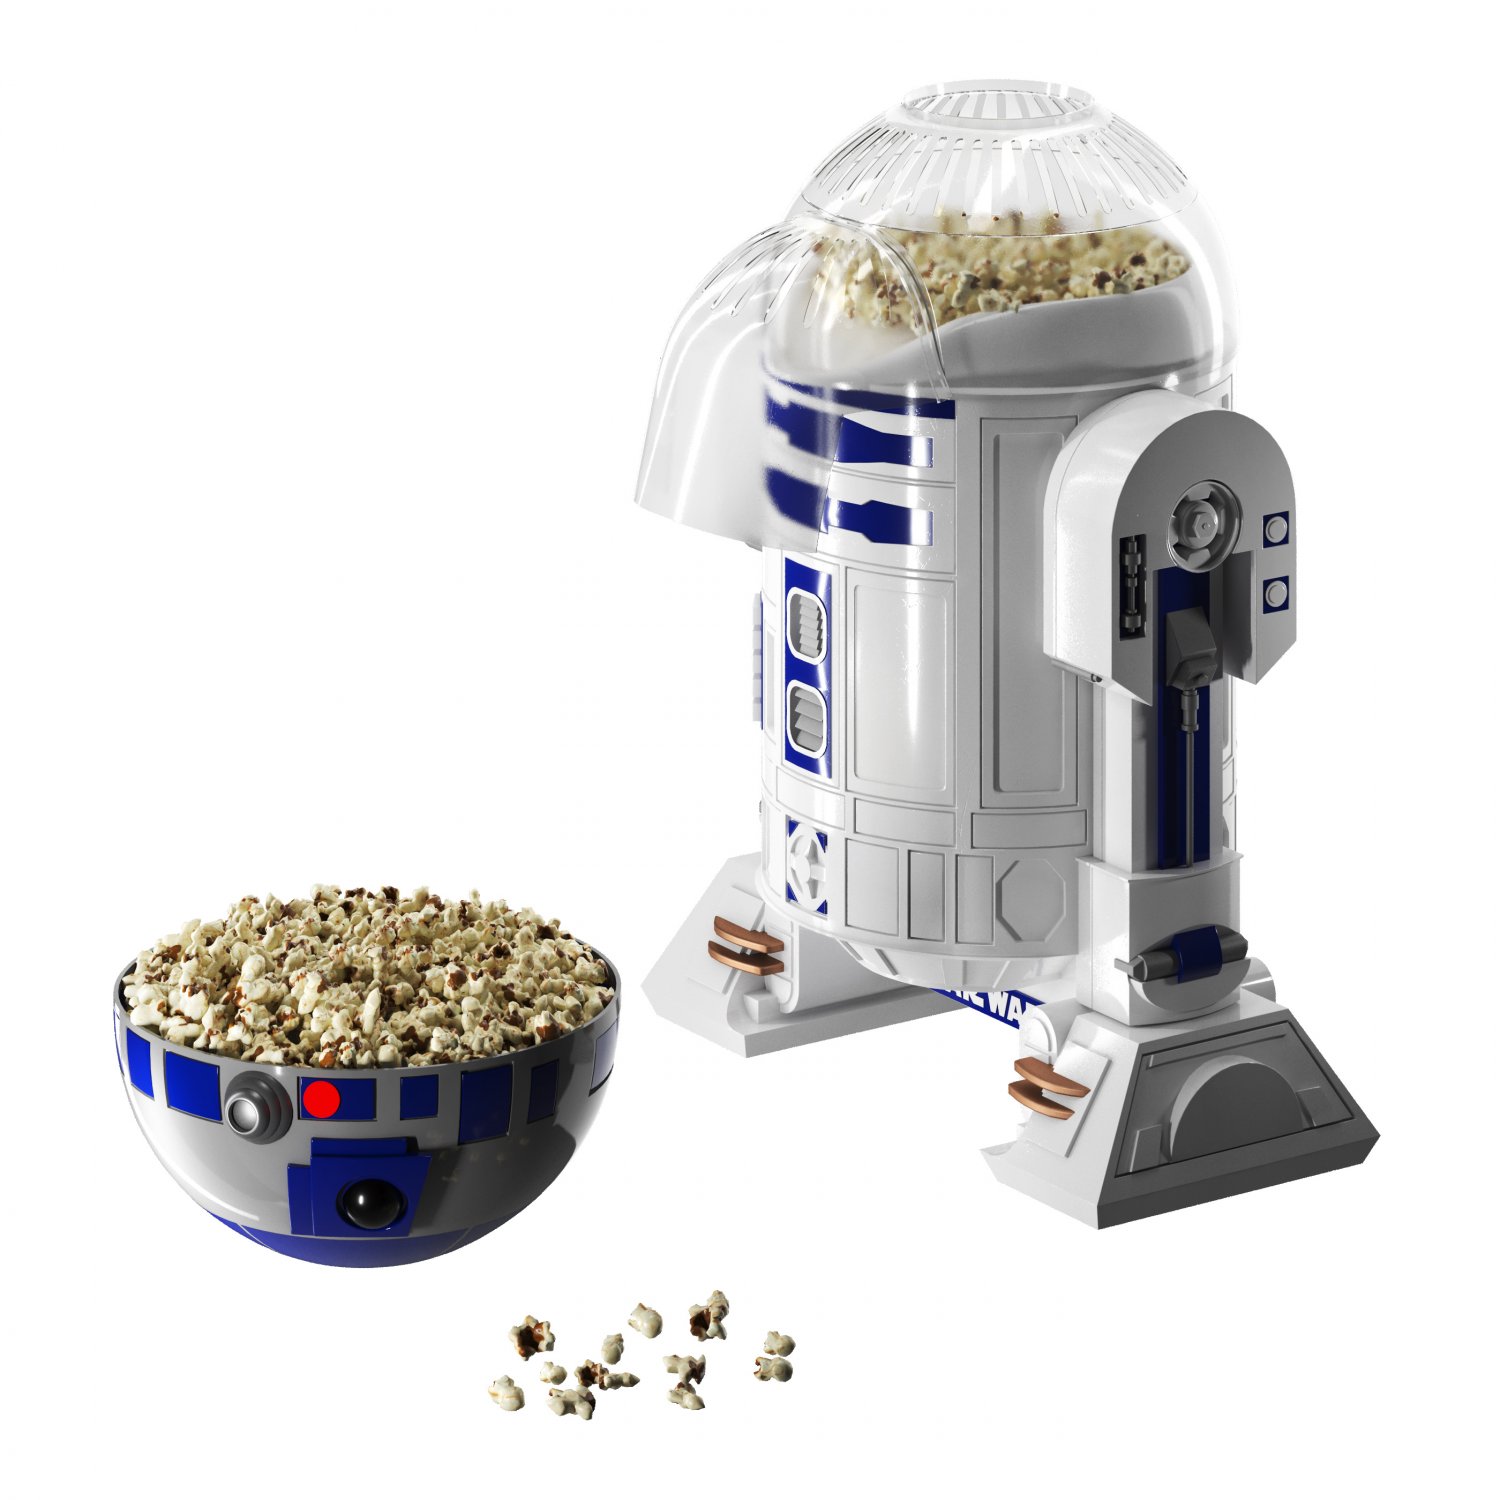 Star Wars R2d2 Popcorn Maker, Popcorn Makers, Furniture & Appliances